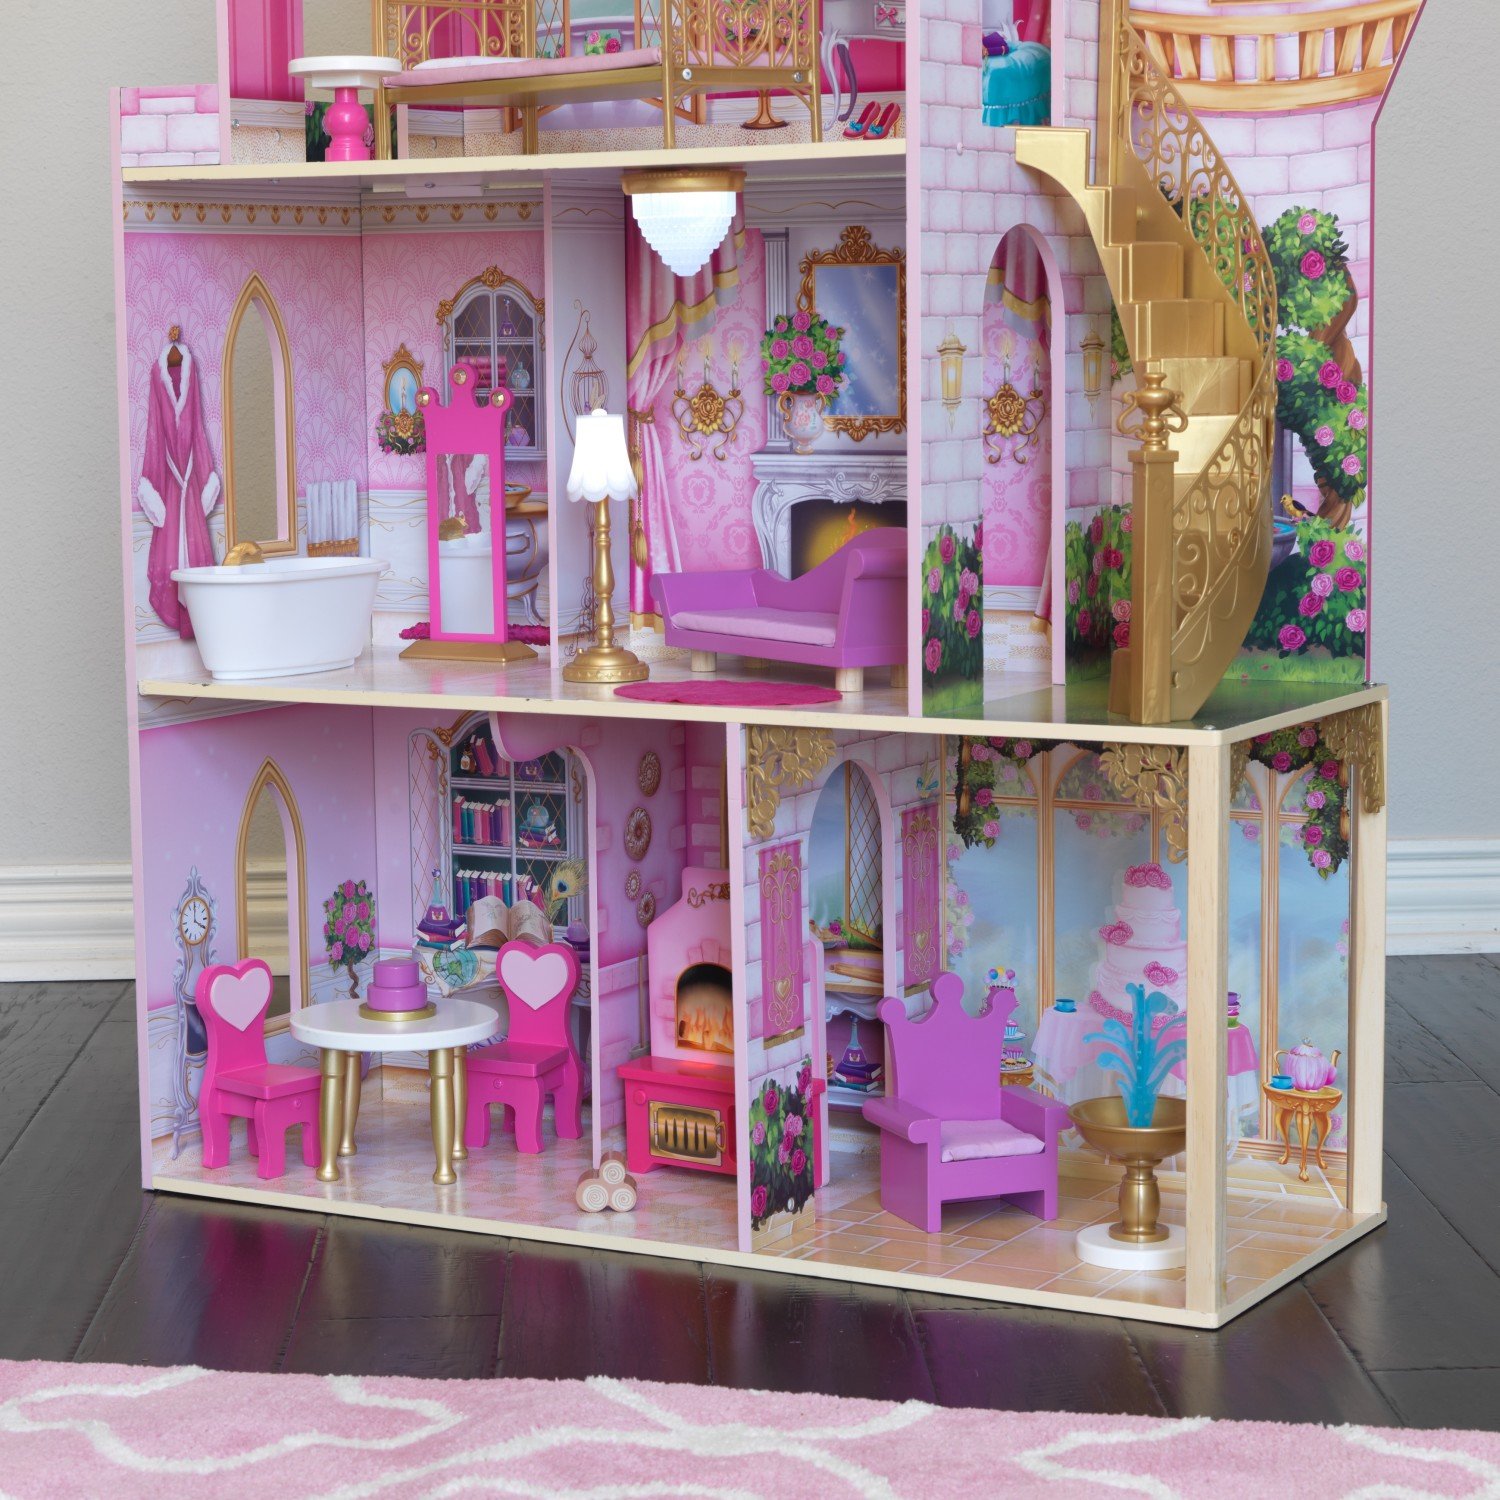 Кукольный домик - Розовый замок  